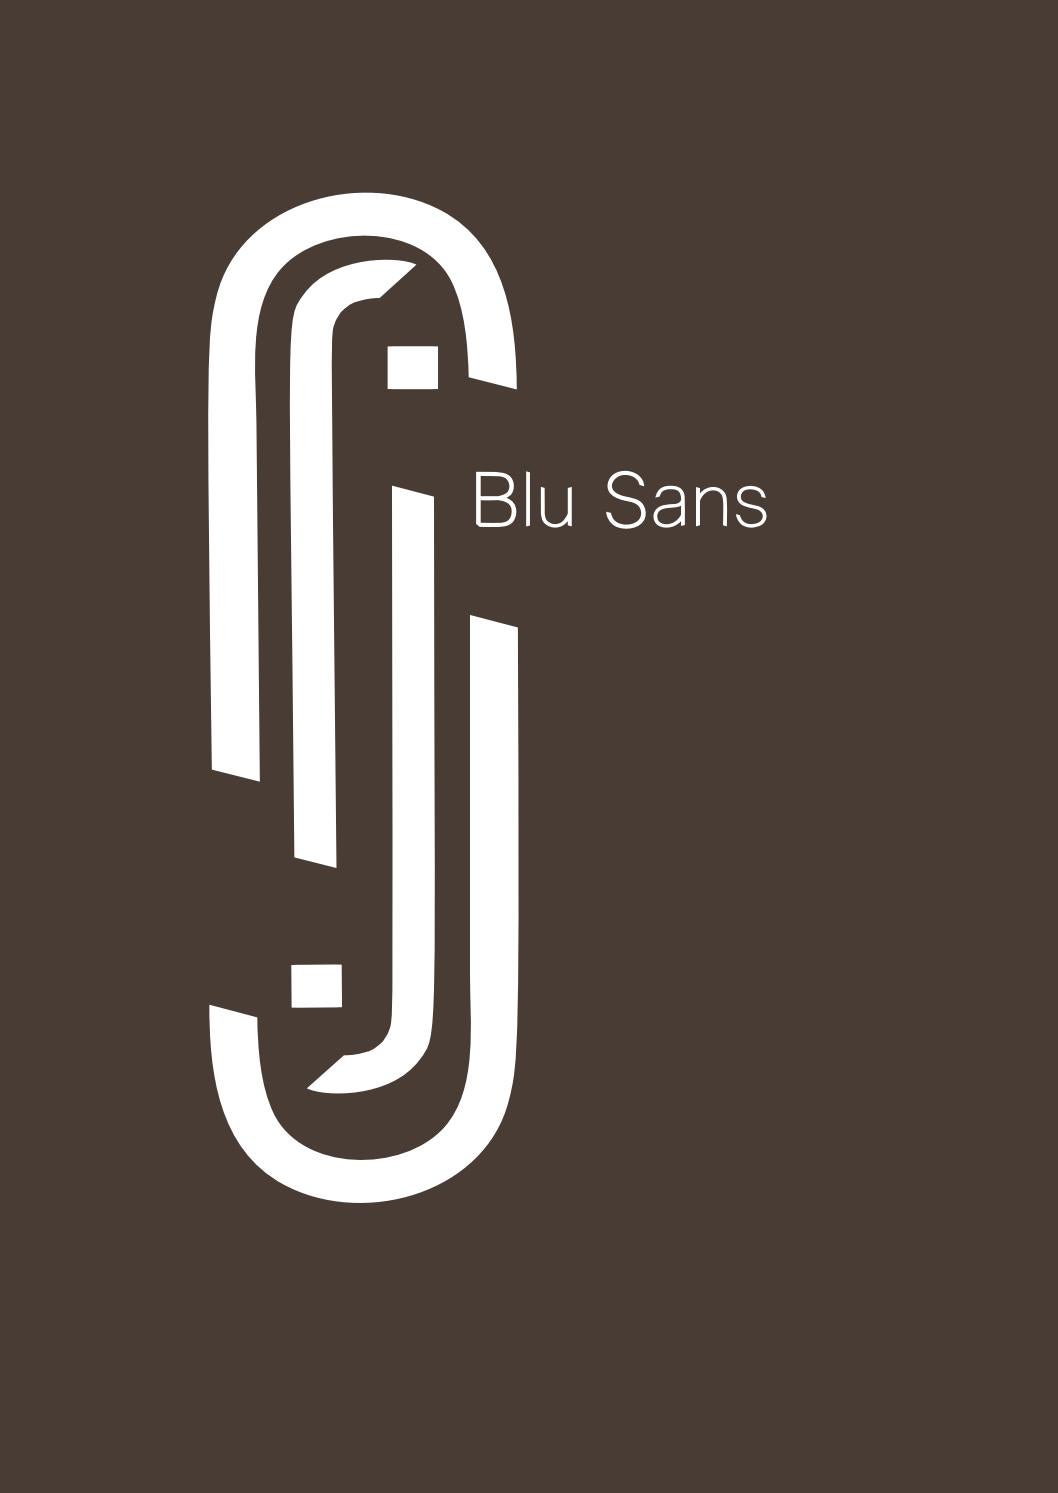 Font Blu Sans